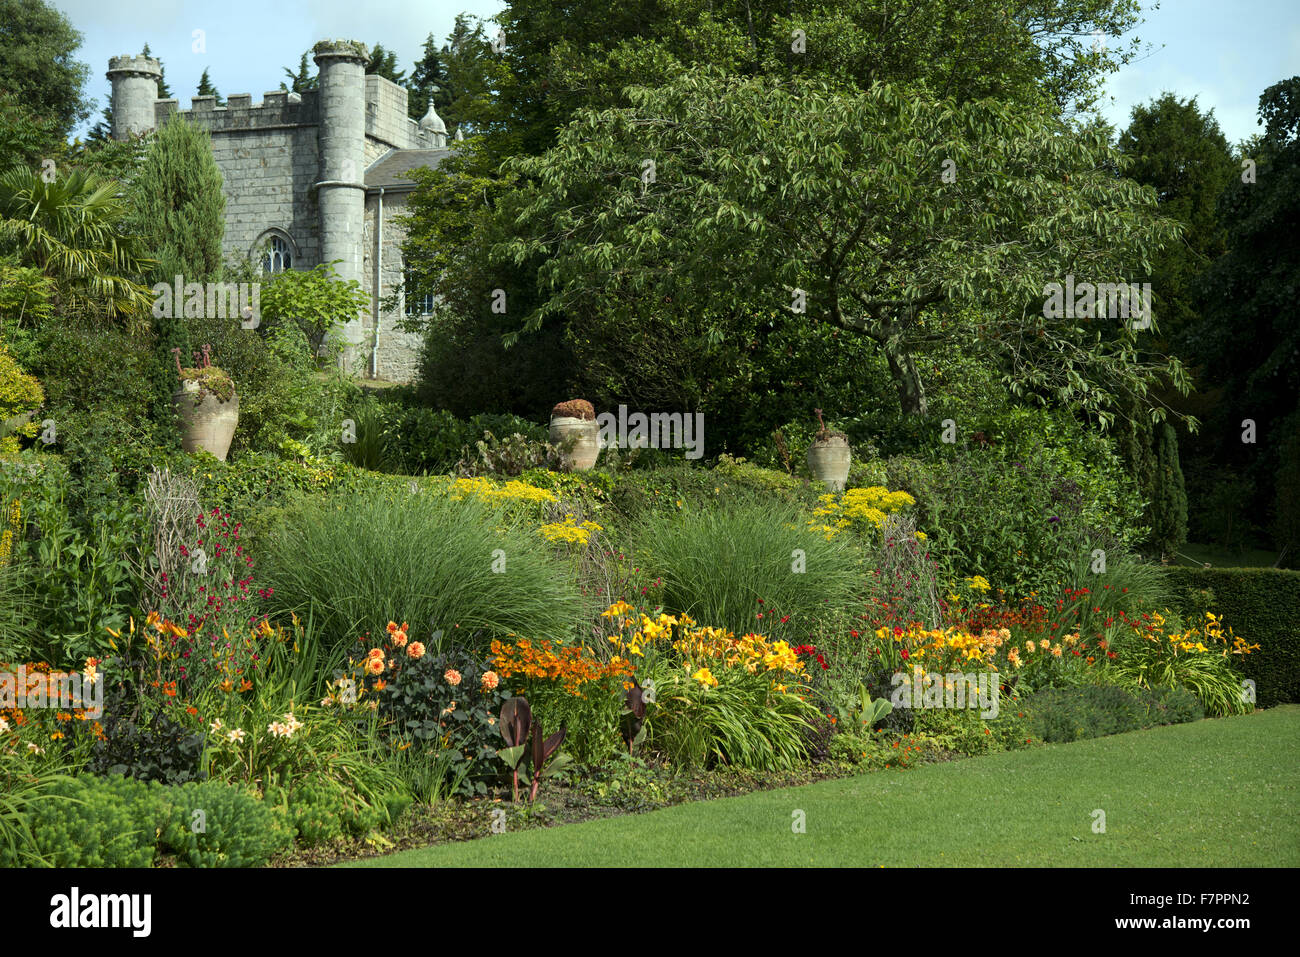 La maison vue du jardin de Plas Newydd Country House and Gardens, Anglesey, Pays de Galles. Ce beau manoir du xviiie siècle se trouve sur les rives du détroit de Menai l, avec des vues à couper le souffle de Snowdonia. Banque D'Images